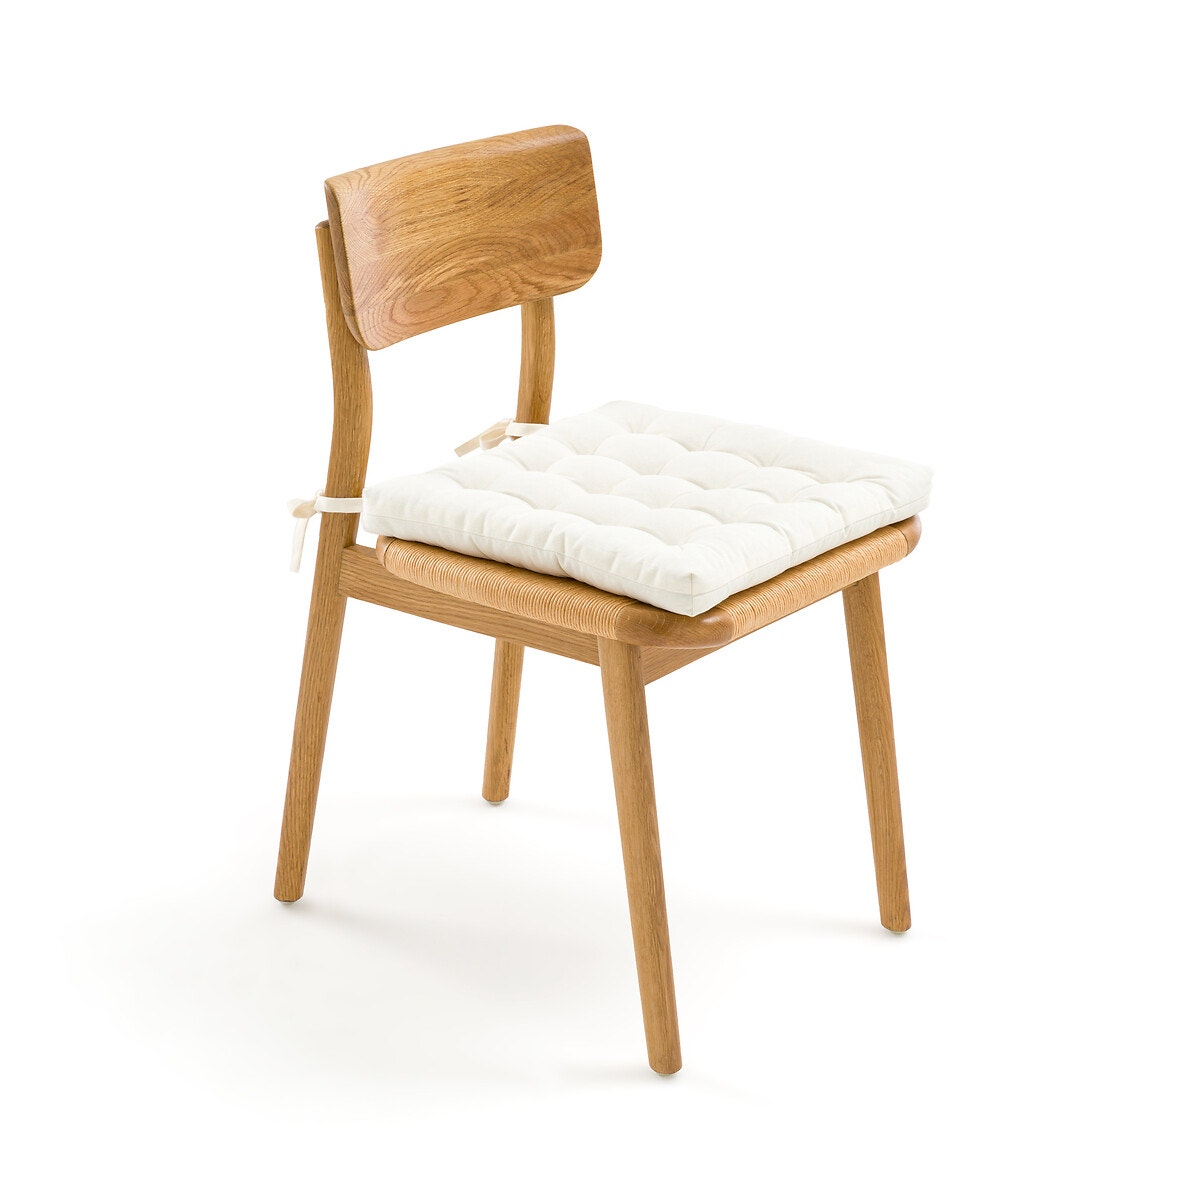 Σπίτι > Λευκά είδη > Ύφασμα, διακόσμηση > Μαξιλάρια καρέκλας Μαξιλάρι καρέκλας από ανακυκλωμένο βαμβάκι 40x40 cm